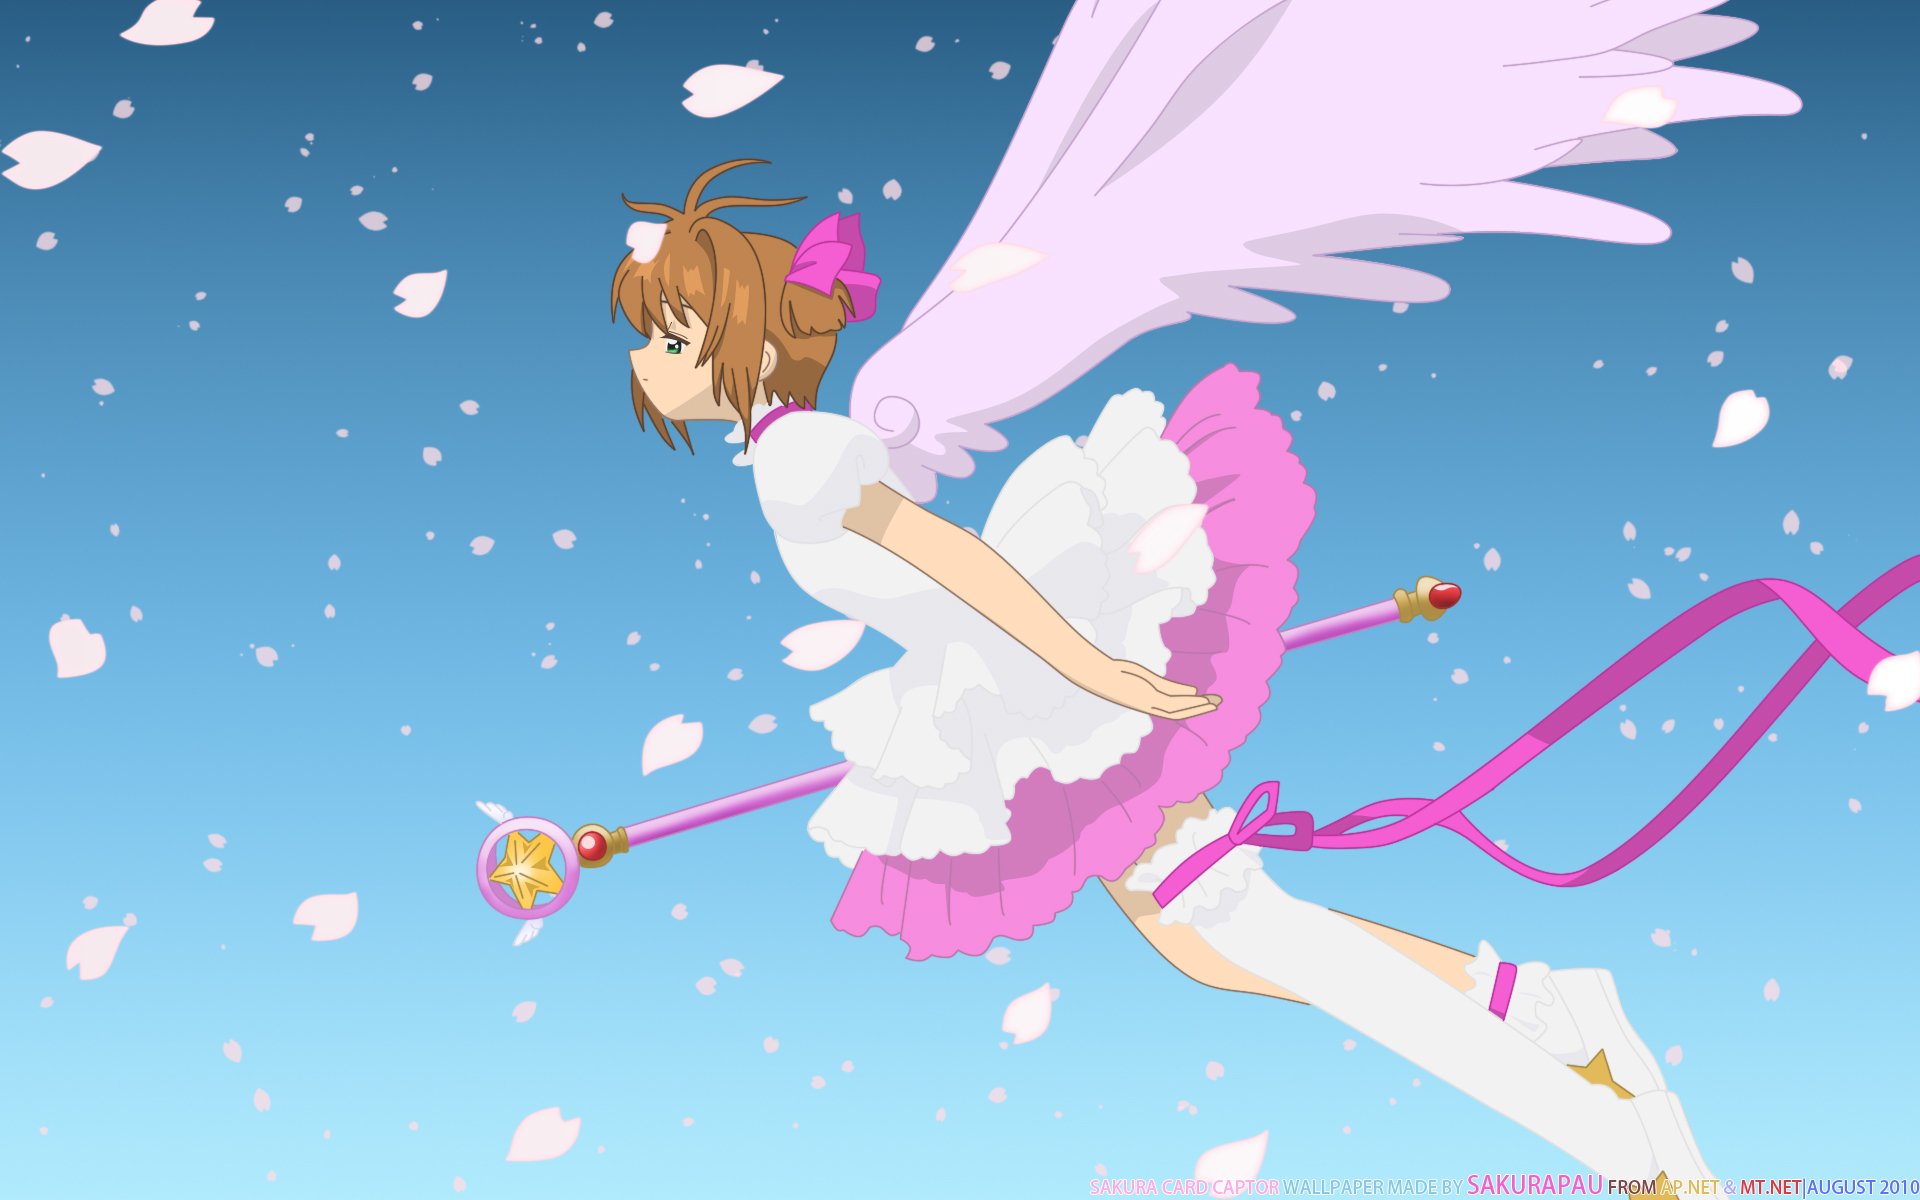 Cardcaptor Sakura Image #842230 - Zerochan Anime Image Board